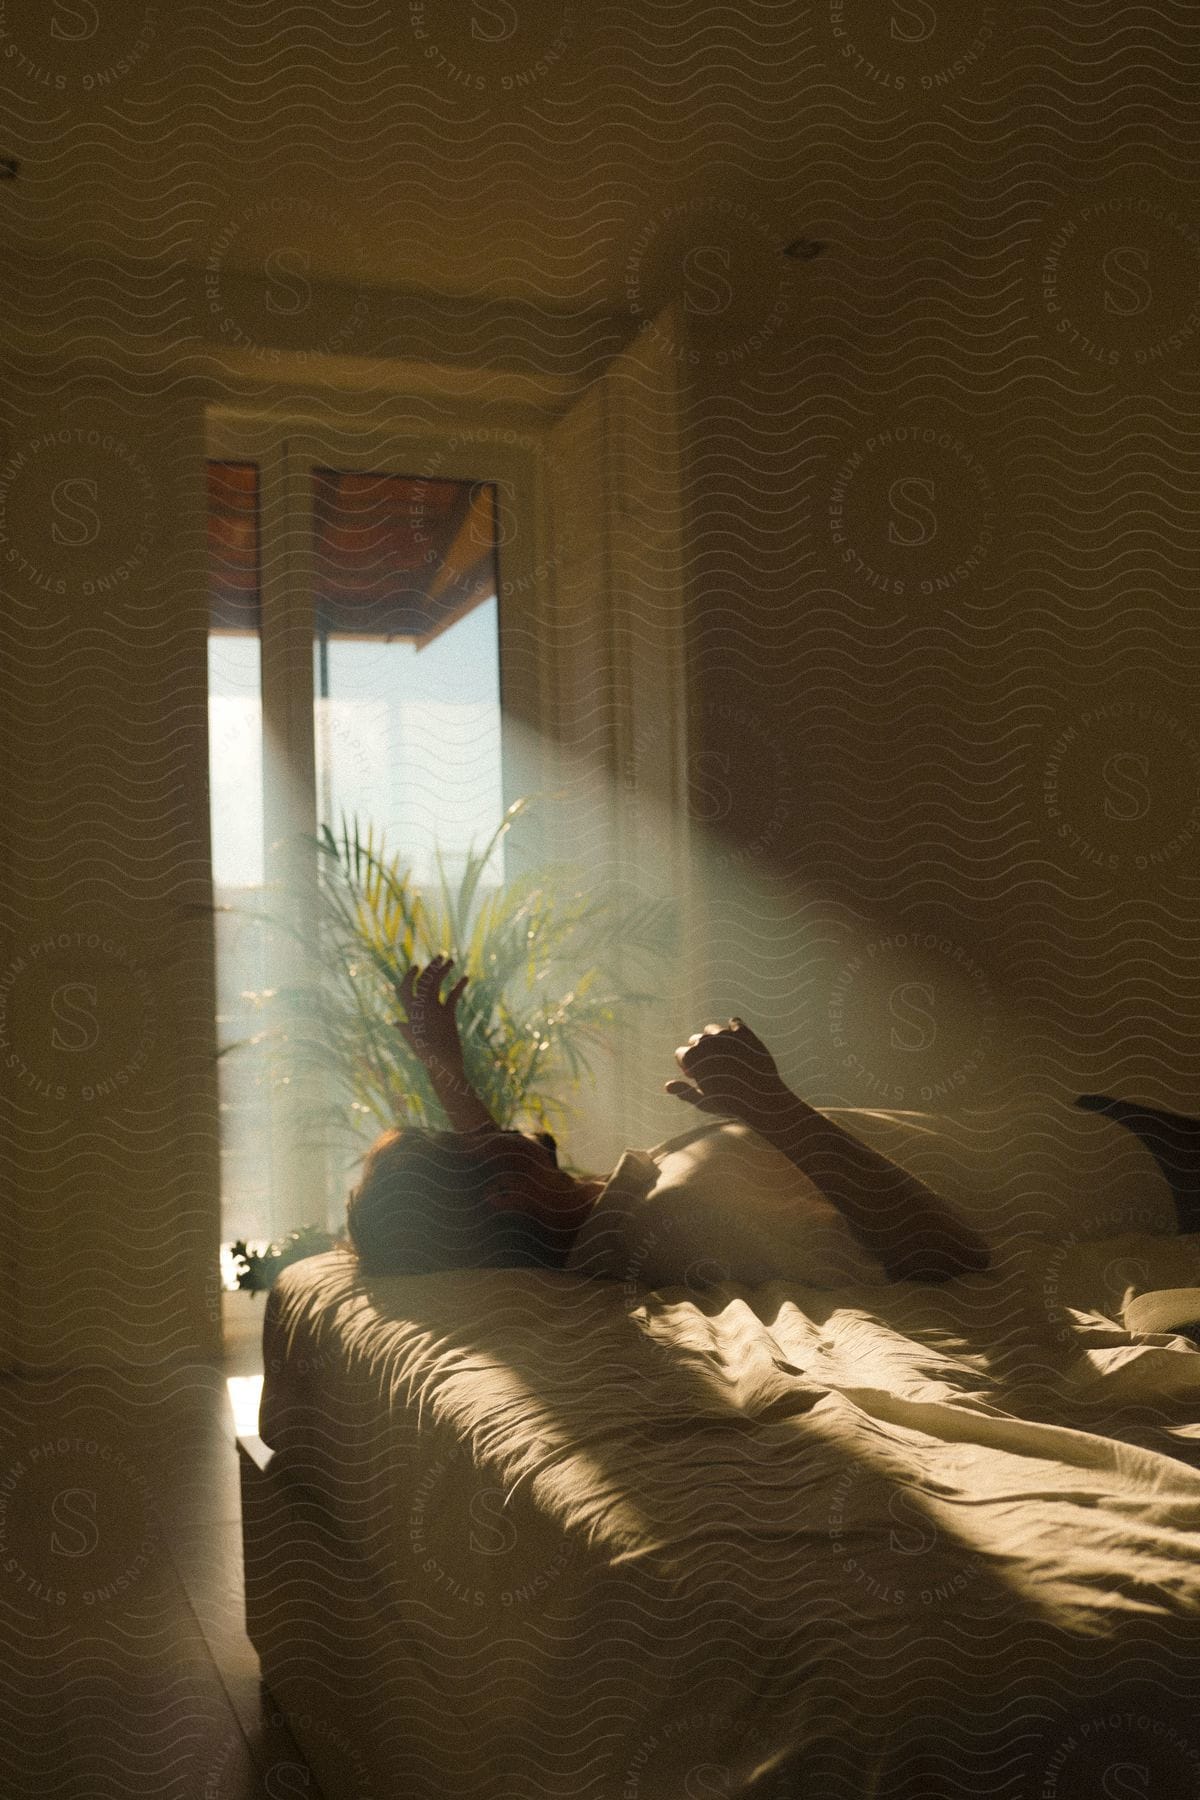 A man lying in a sunlit bedroom